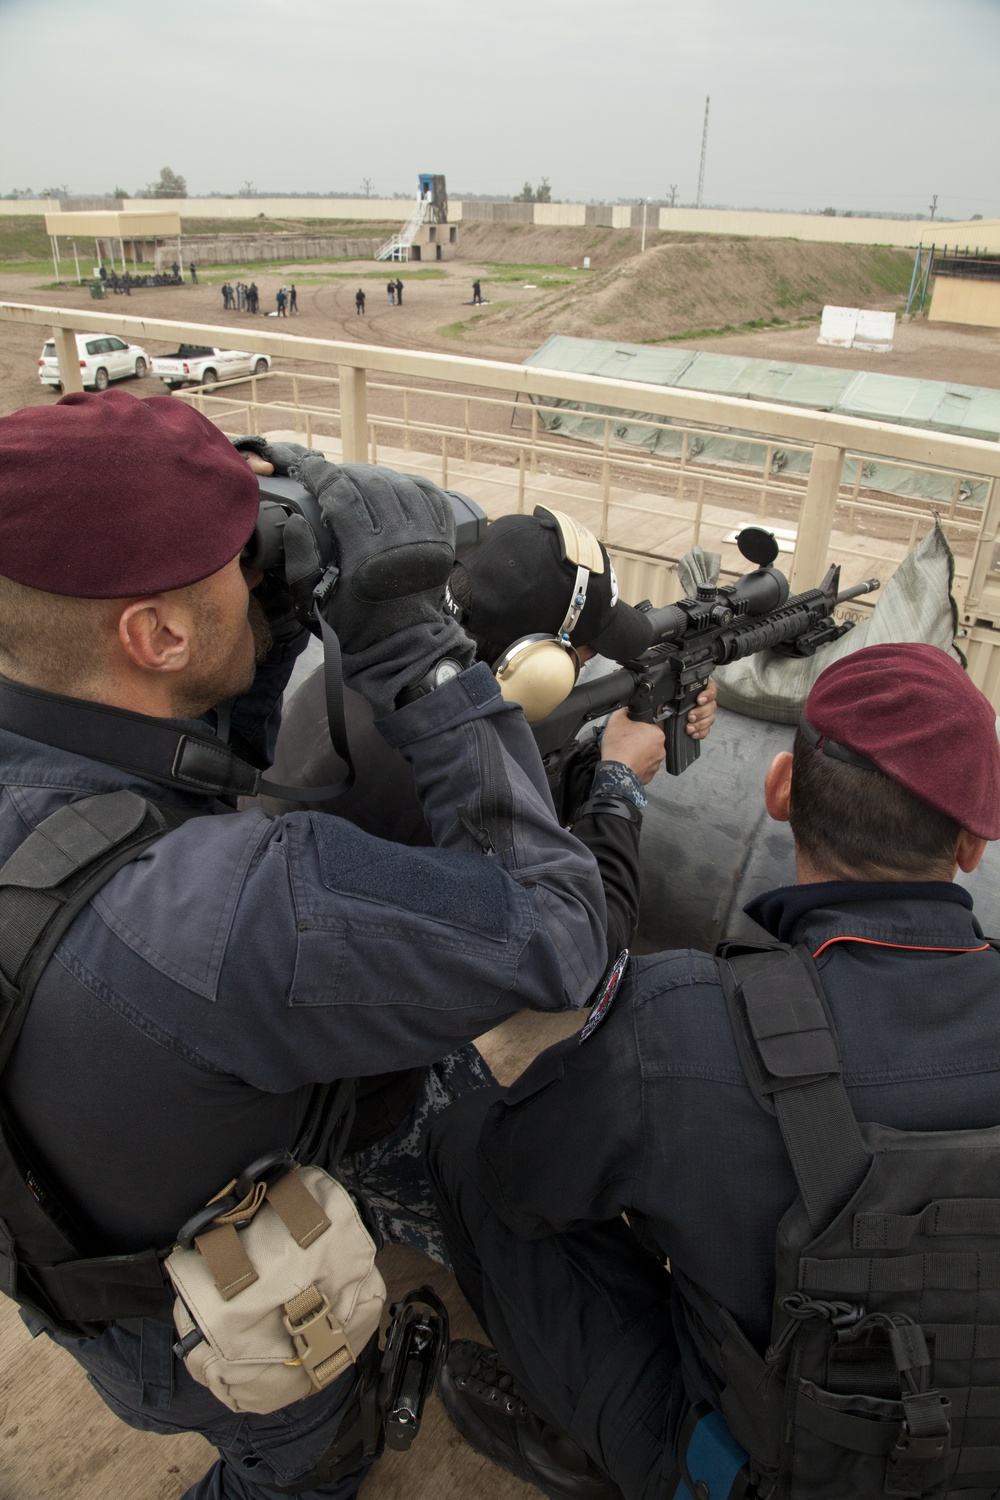 Carabinieri train Iraqi police